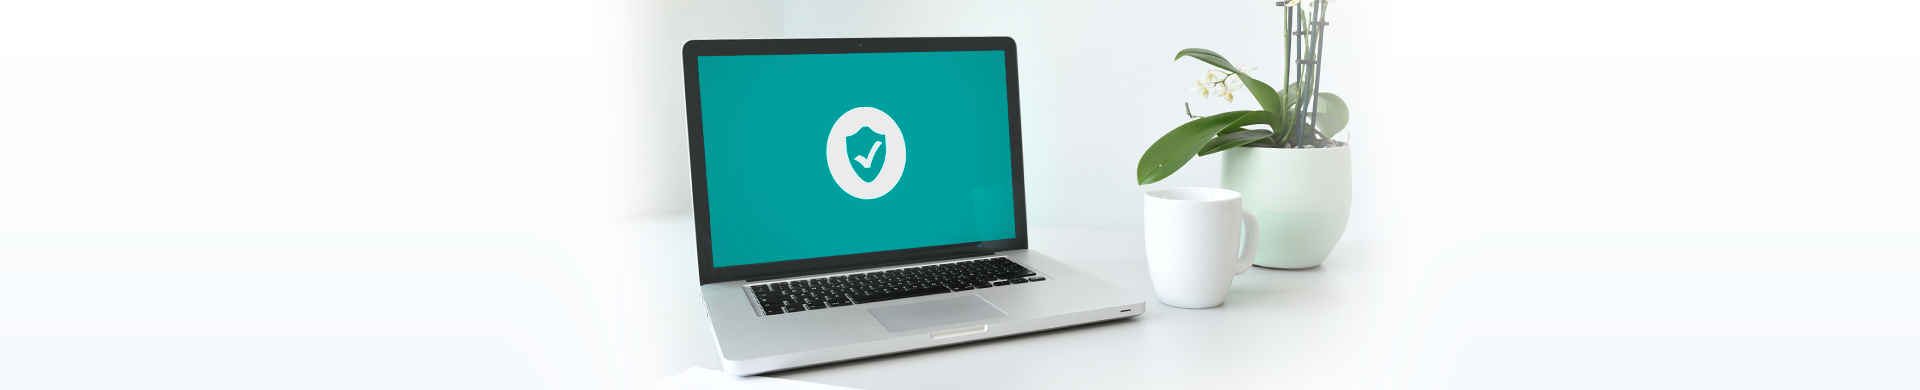 Antivirus - Umfassender Malwareschutz für Ihr Unternehmen